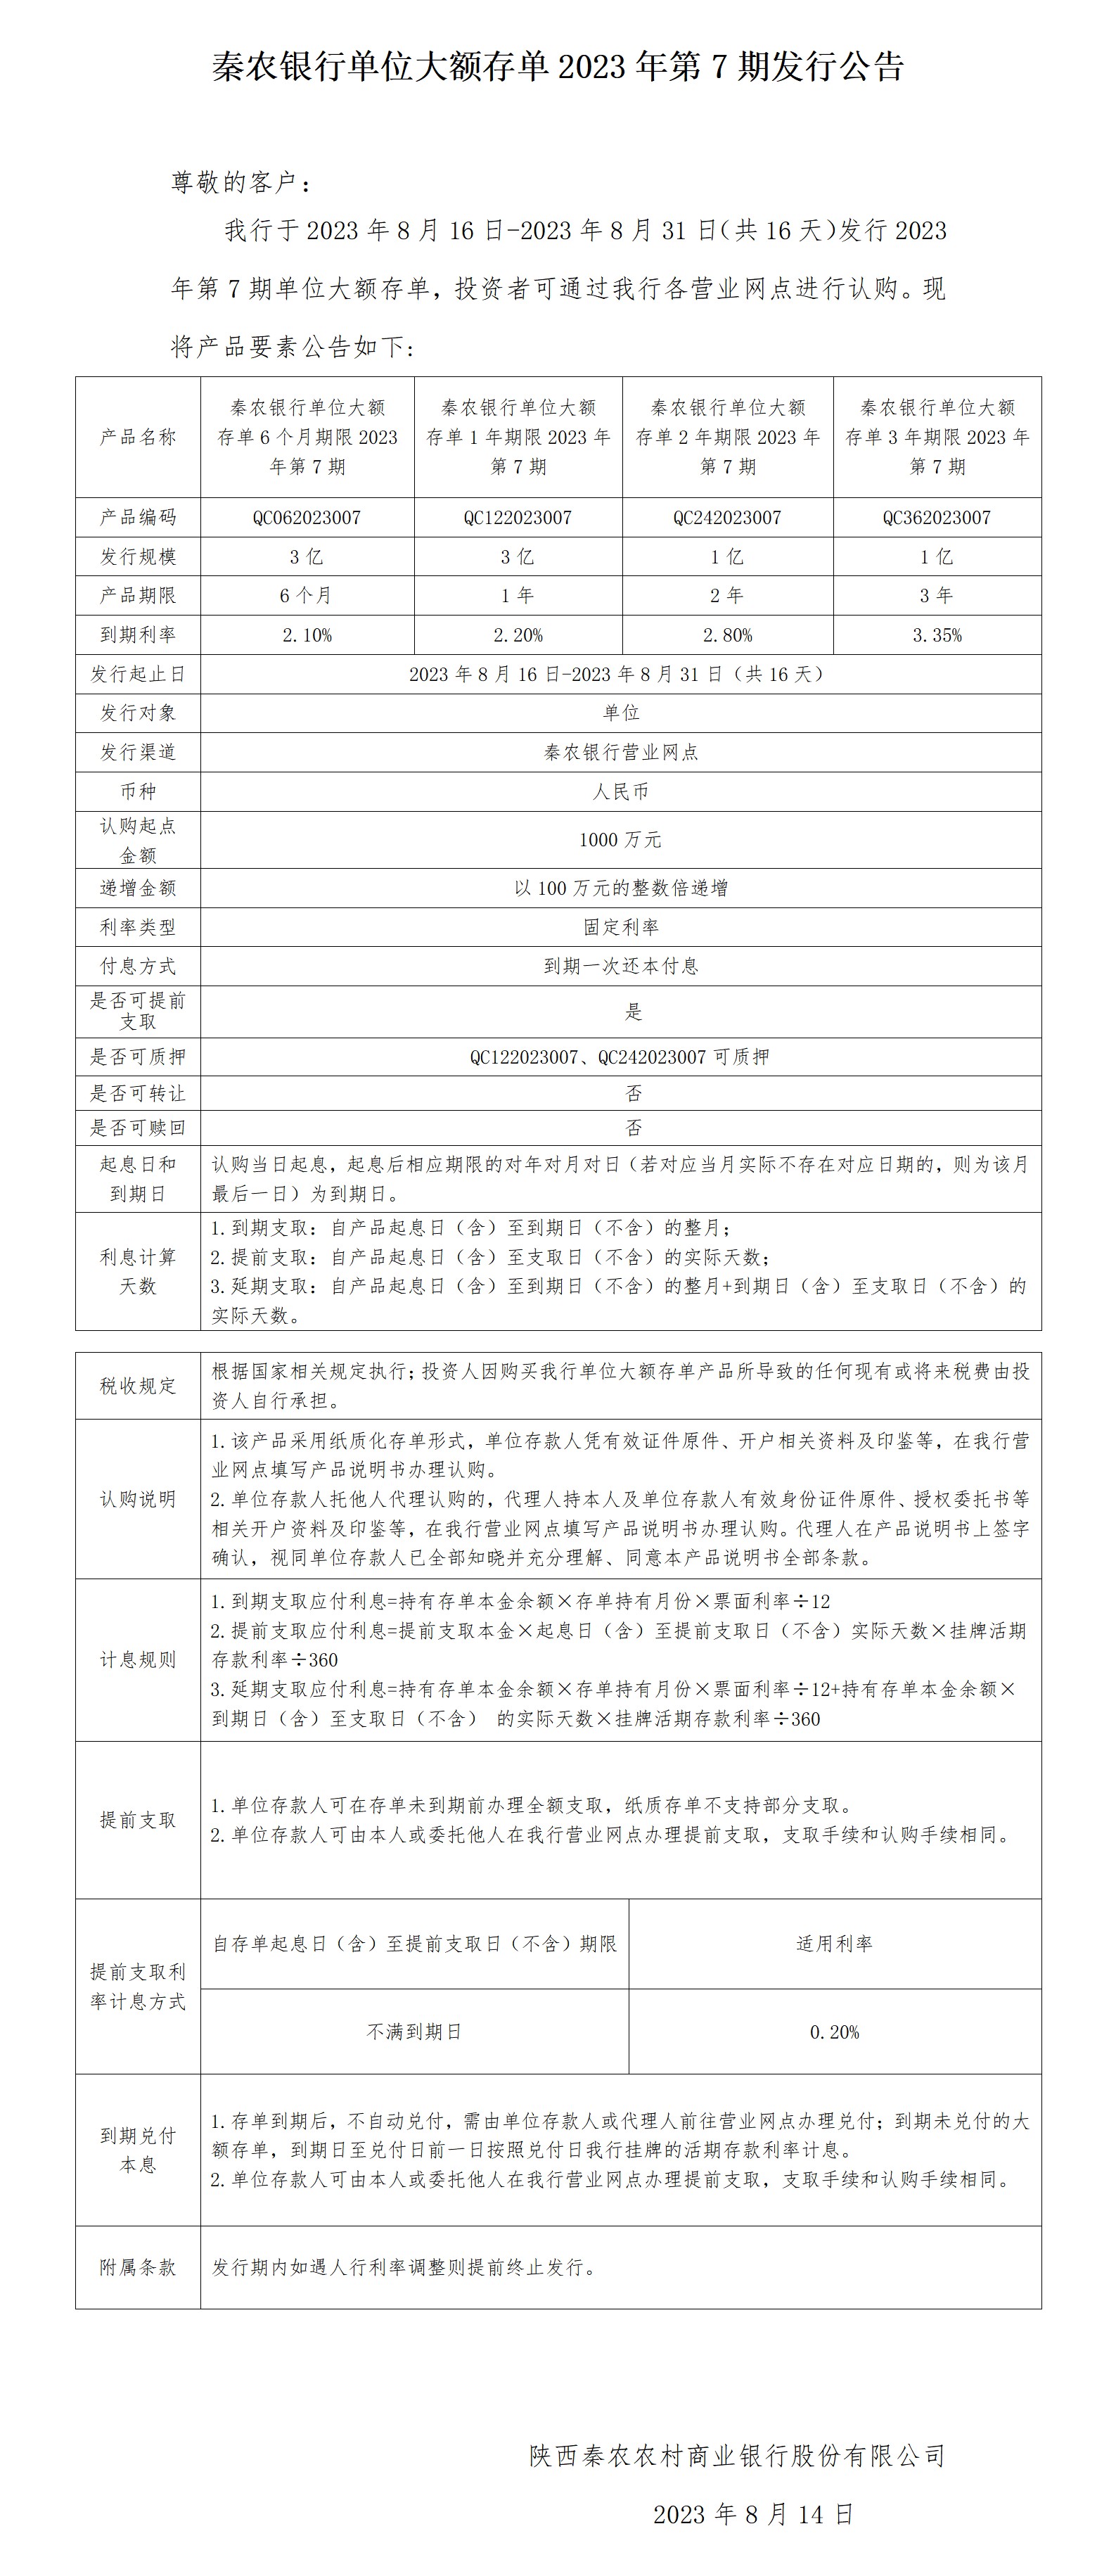 秦農銀行單位大(dà)額存單2023年第7期發行公告2023.8.14_01(1)(1).jpg